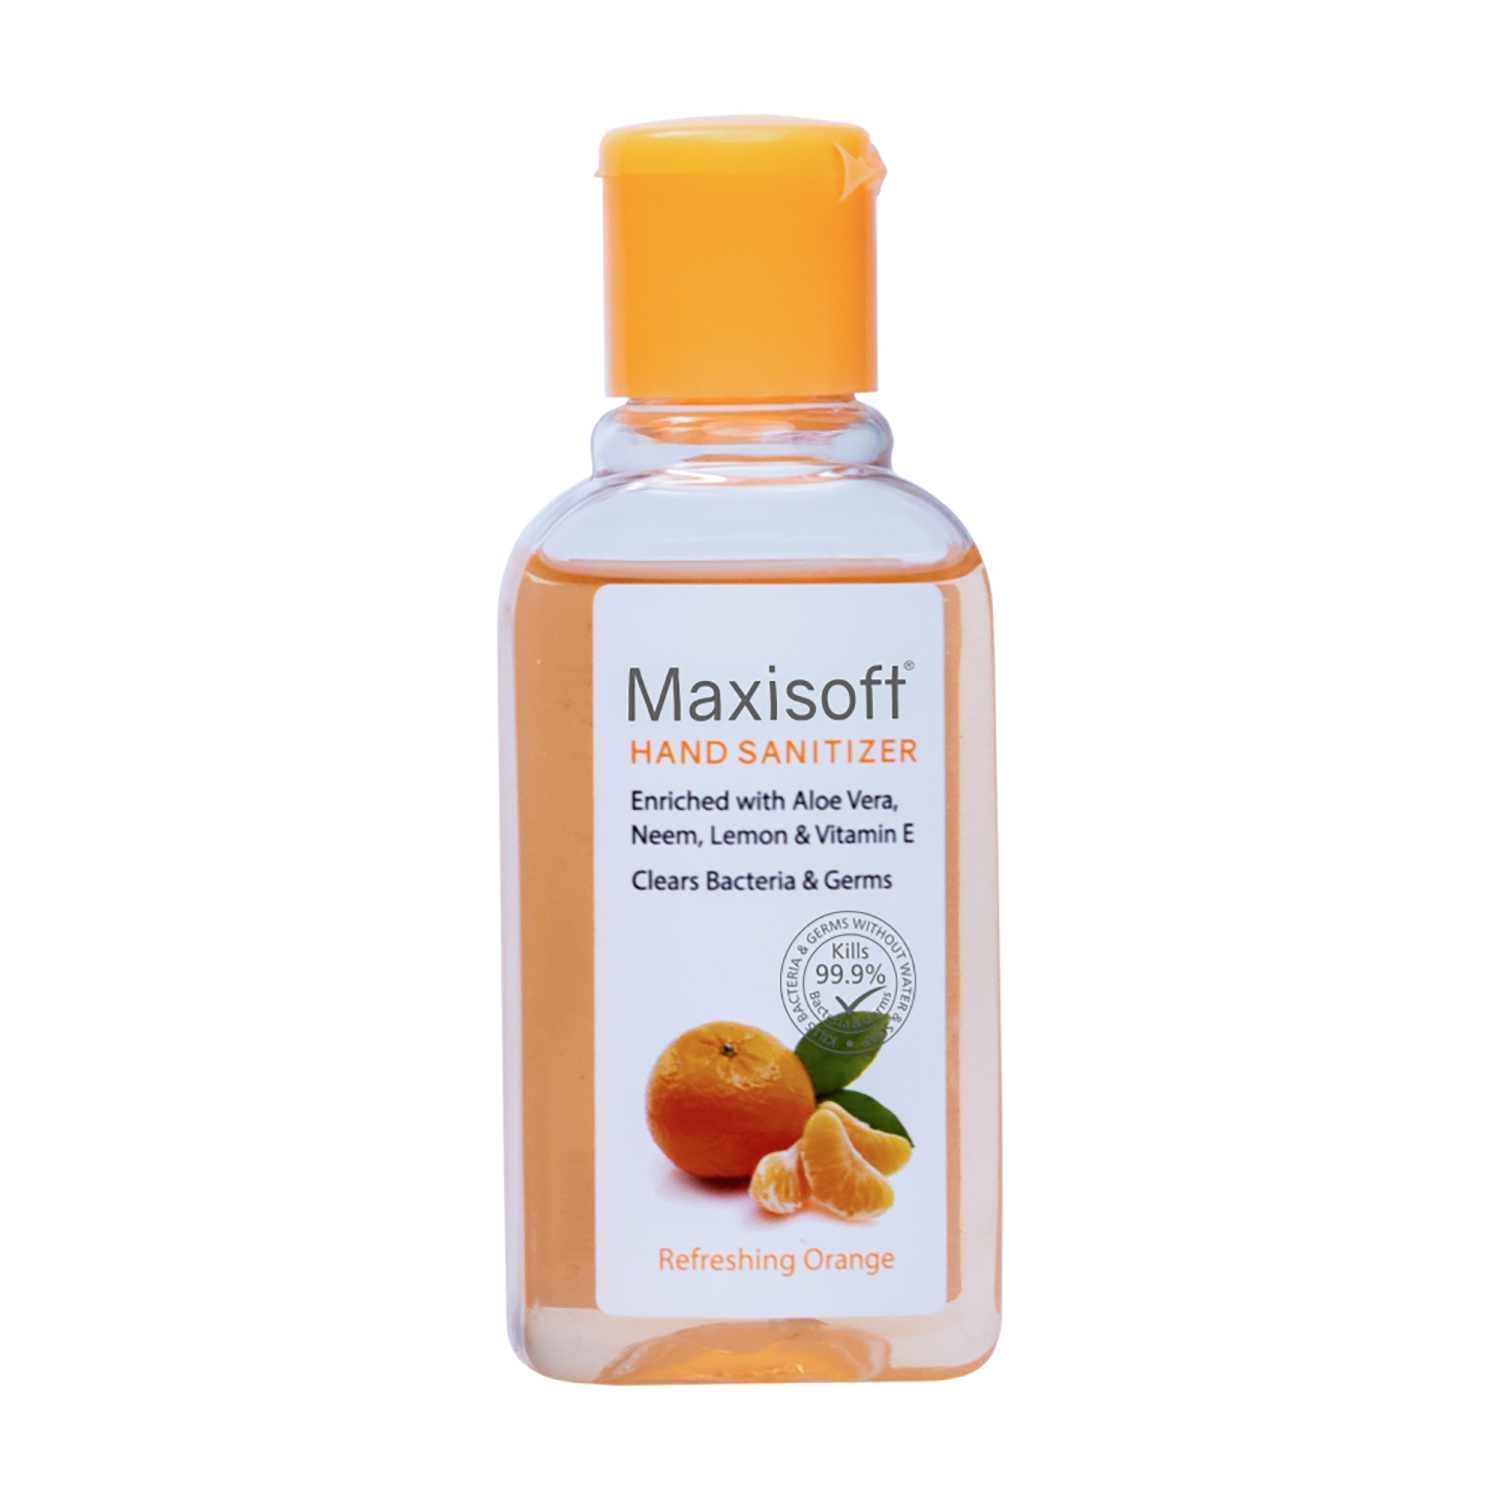 Maxisoft Hand Sanitizer Gel Refreshing Orange (60 ml)